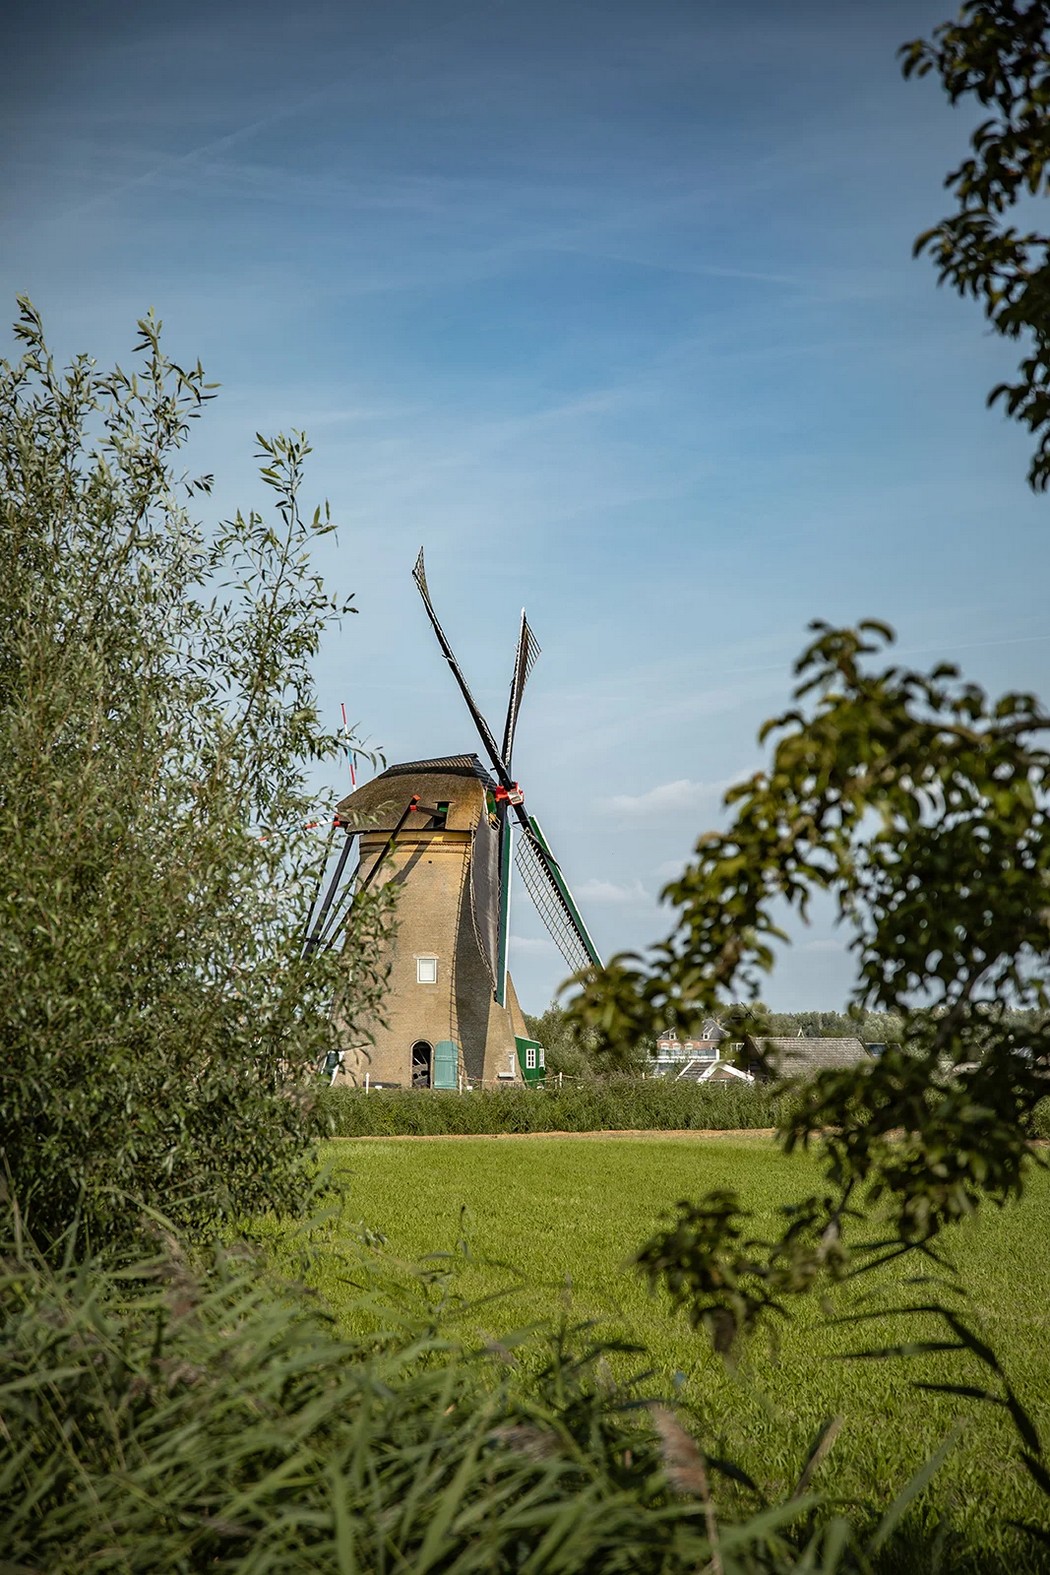 Киндердейк — край ветряных мельниц Голландия,Киндердейк,мельницы,Нидерланды